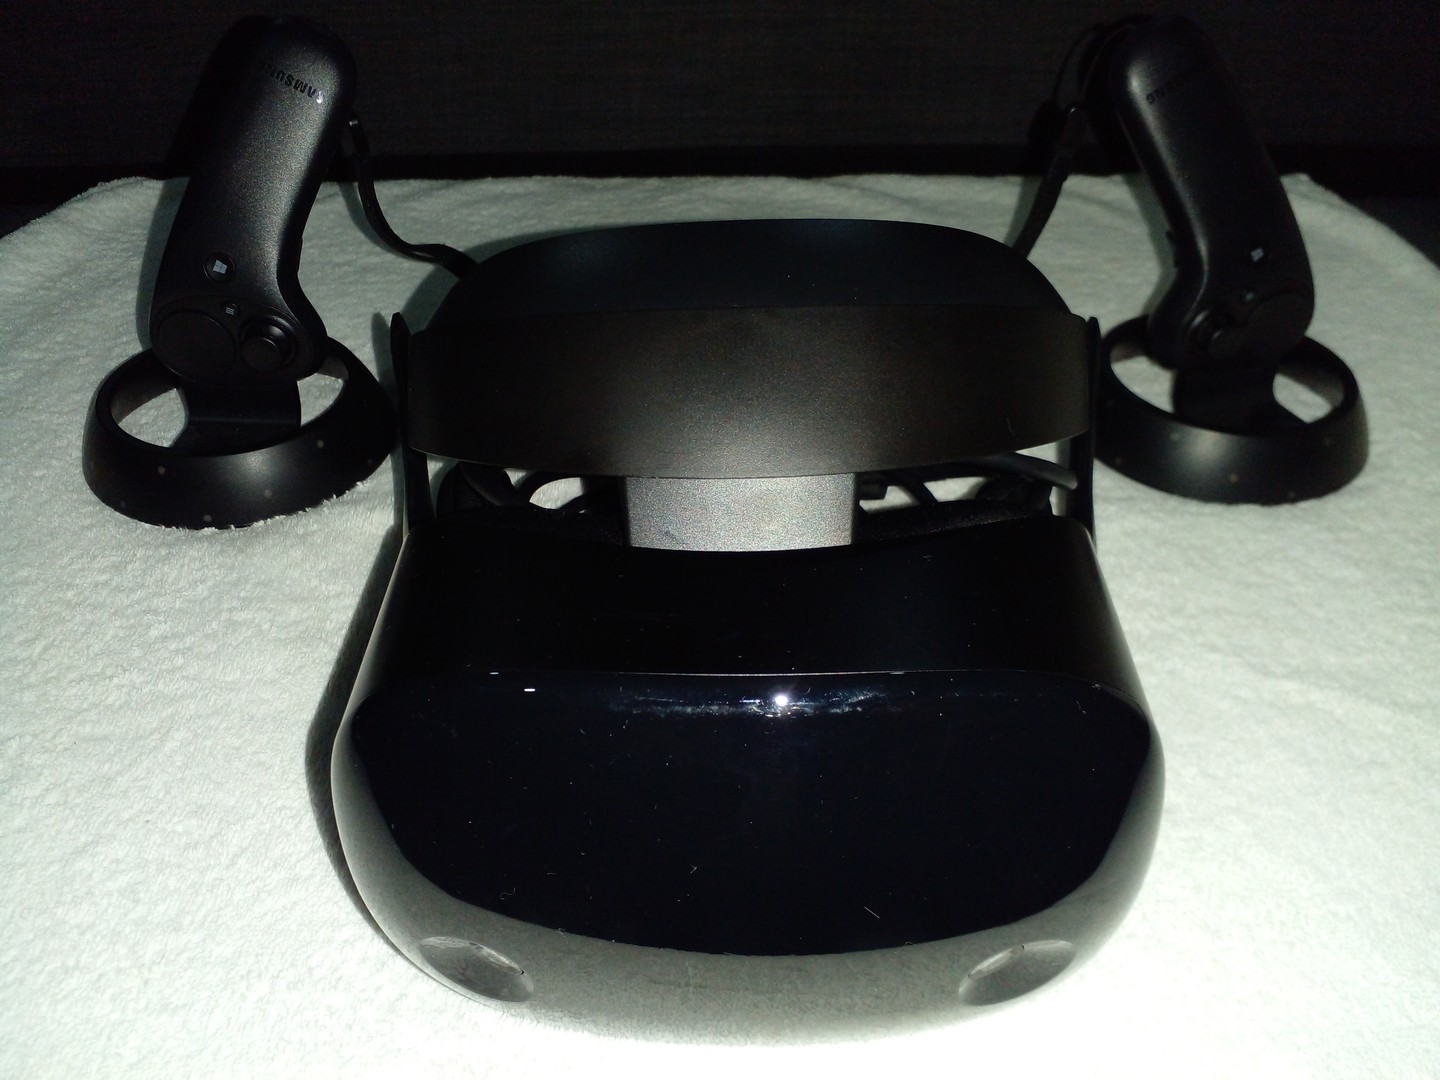 consolas y videojuegos - Casco De Realidad Virtual (VR HeadSet) Samsung odyssey+ 4